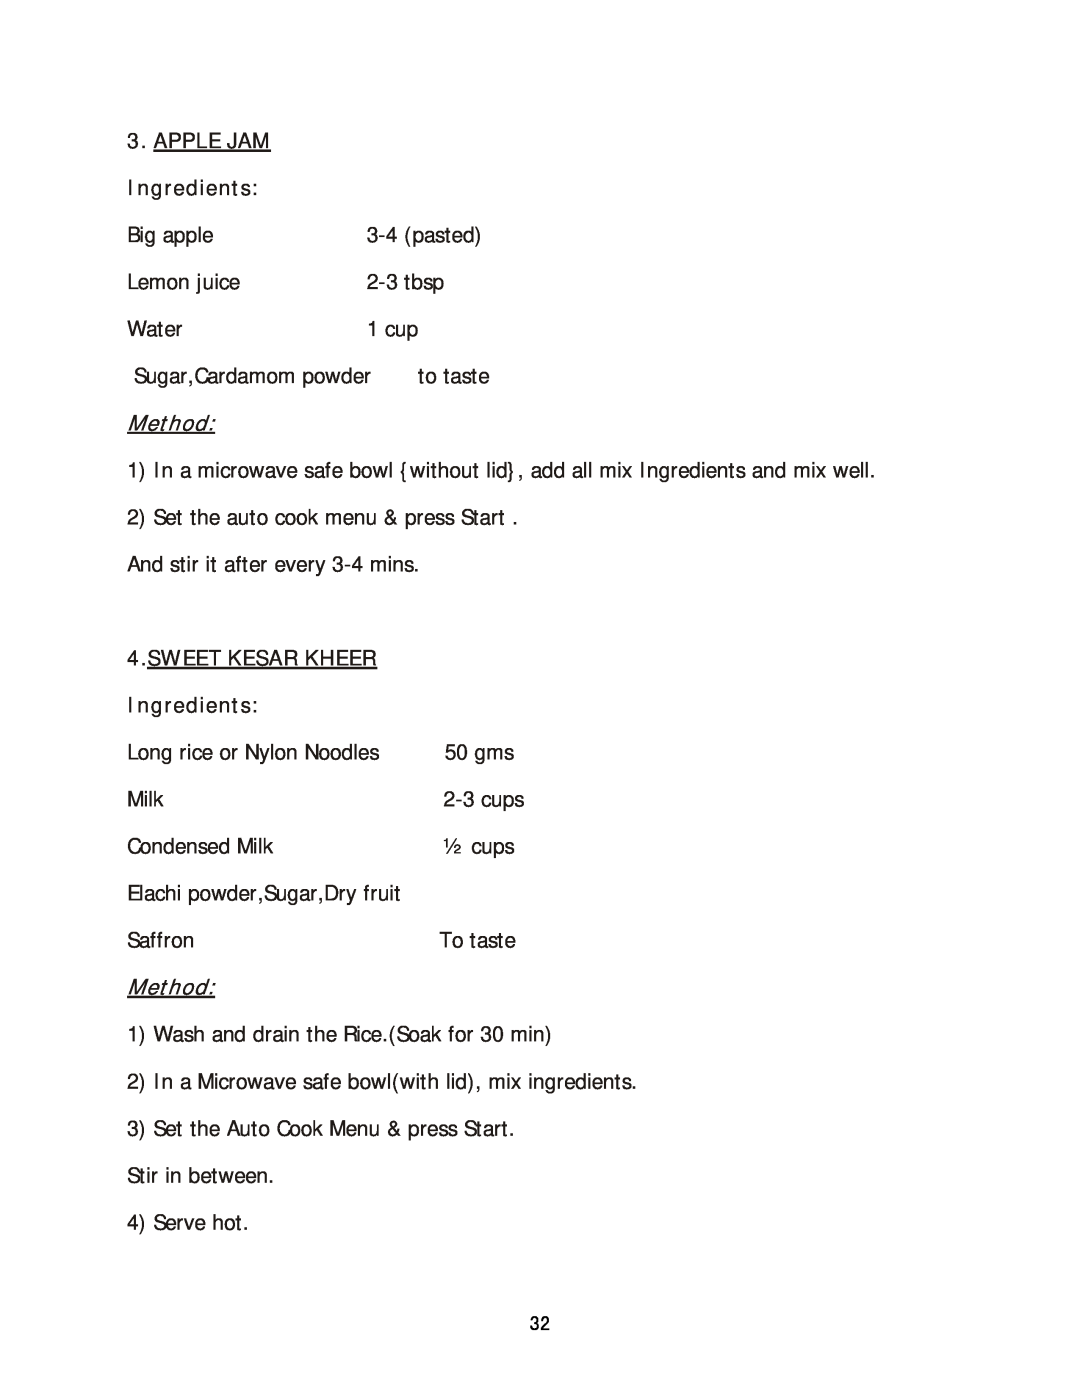 Haier HIL 2810EGCB manual APPLE JAM Ingredients, Method, Sweet Kesar Kheer 